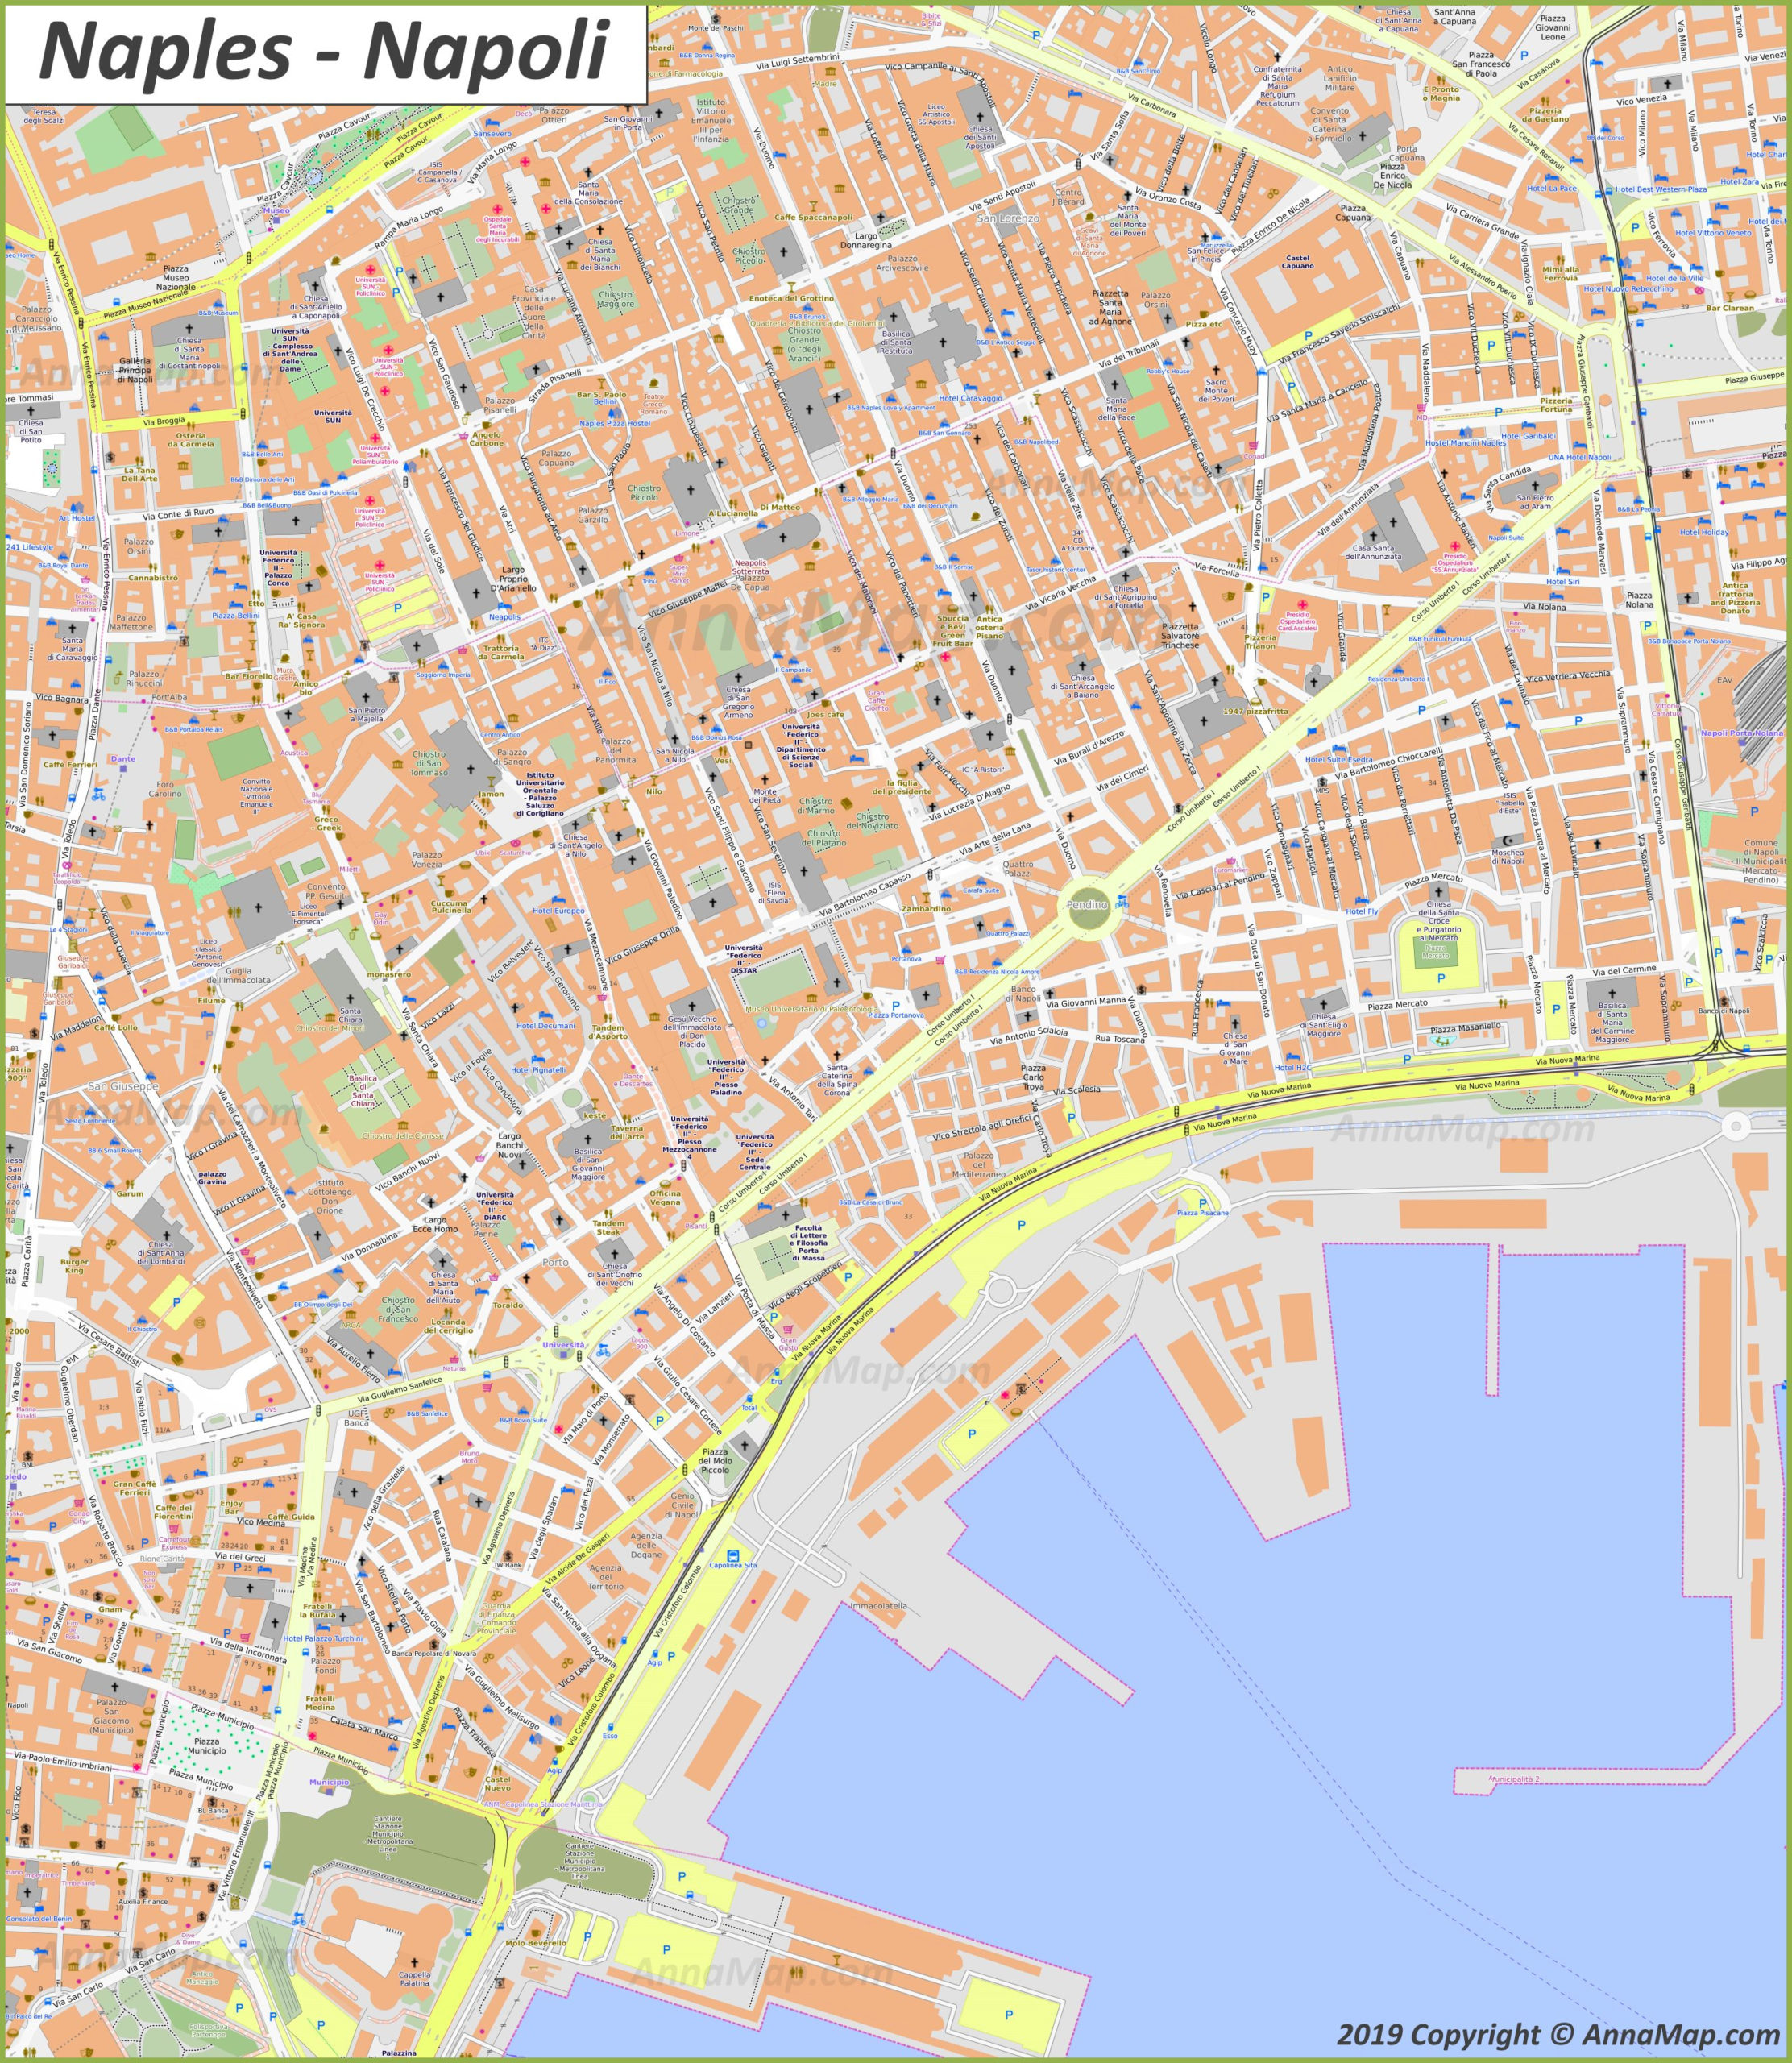 Detailed Tourist Maps Of Naples Italy Free Printable 